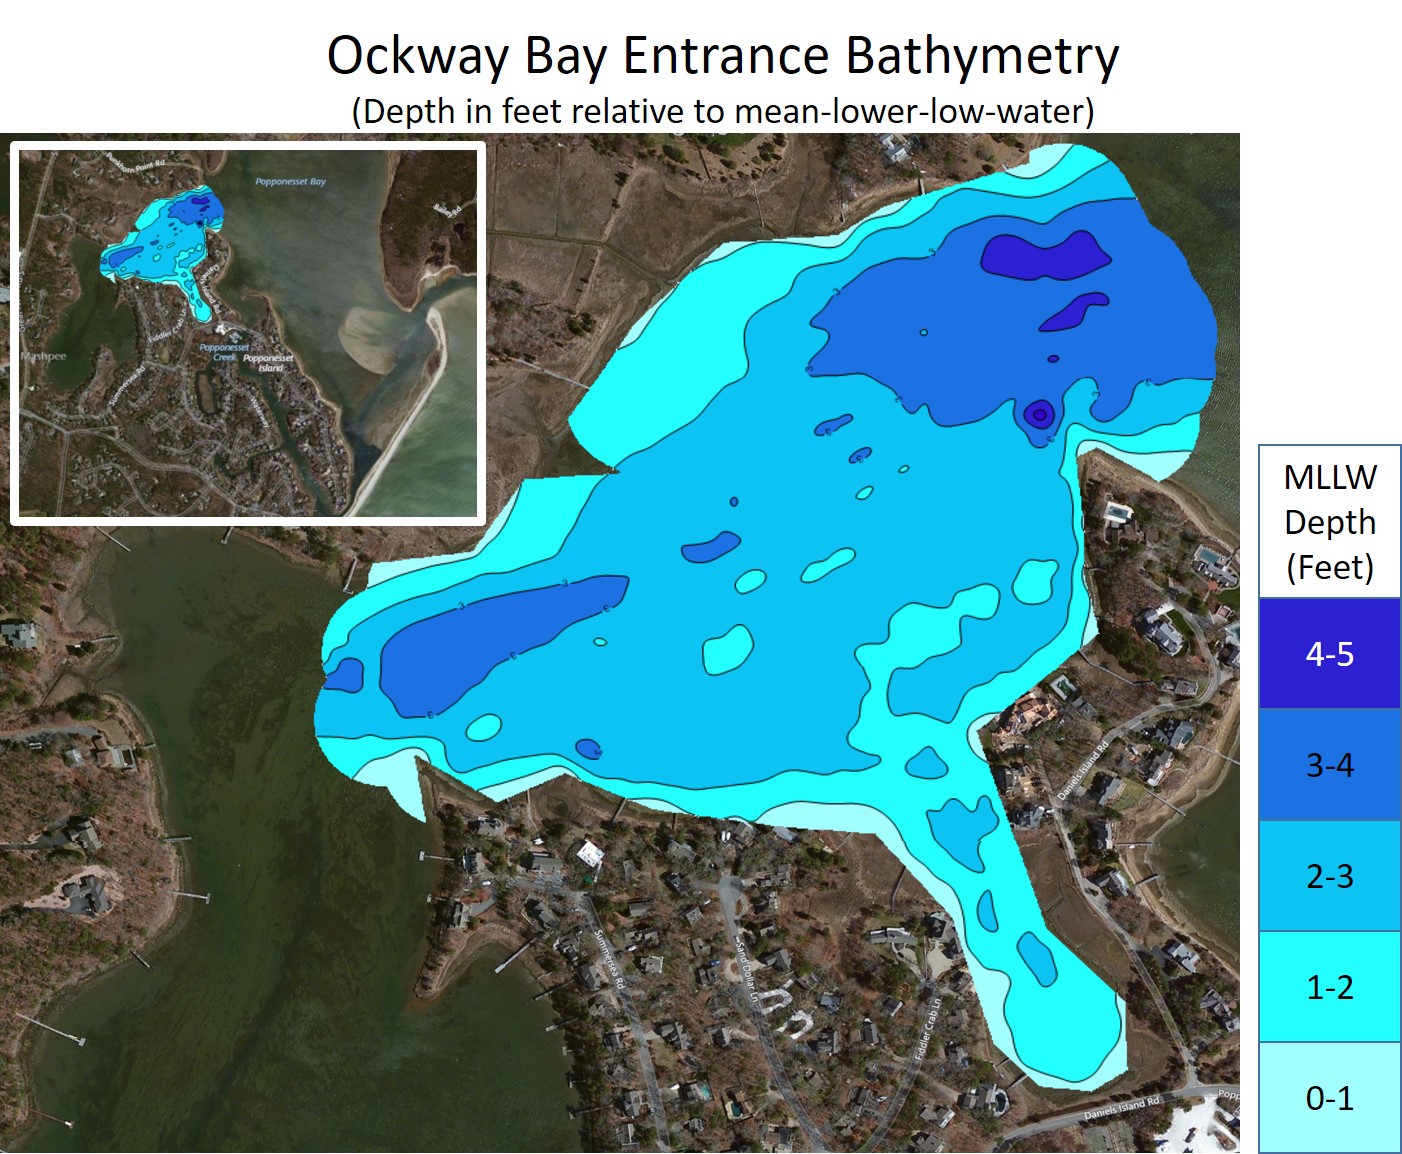 Ockway Bay Entrance Bathymetry